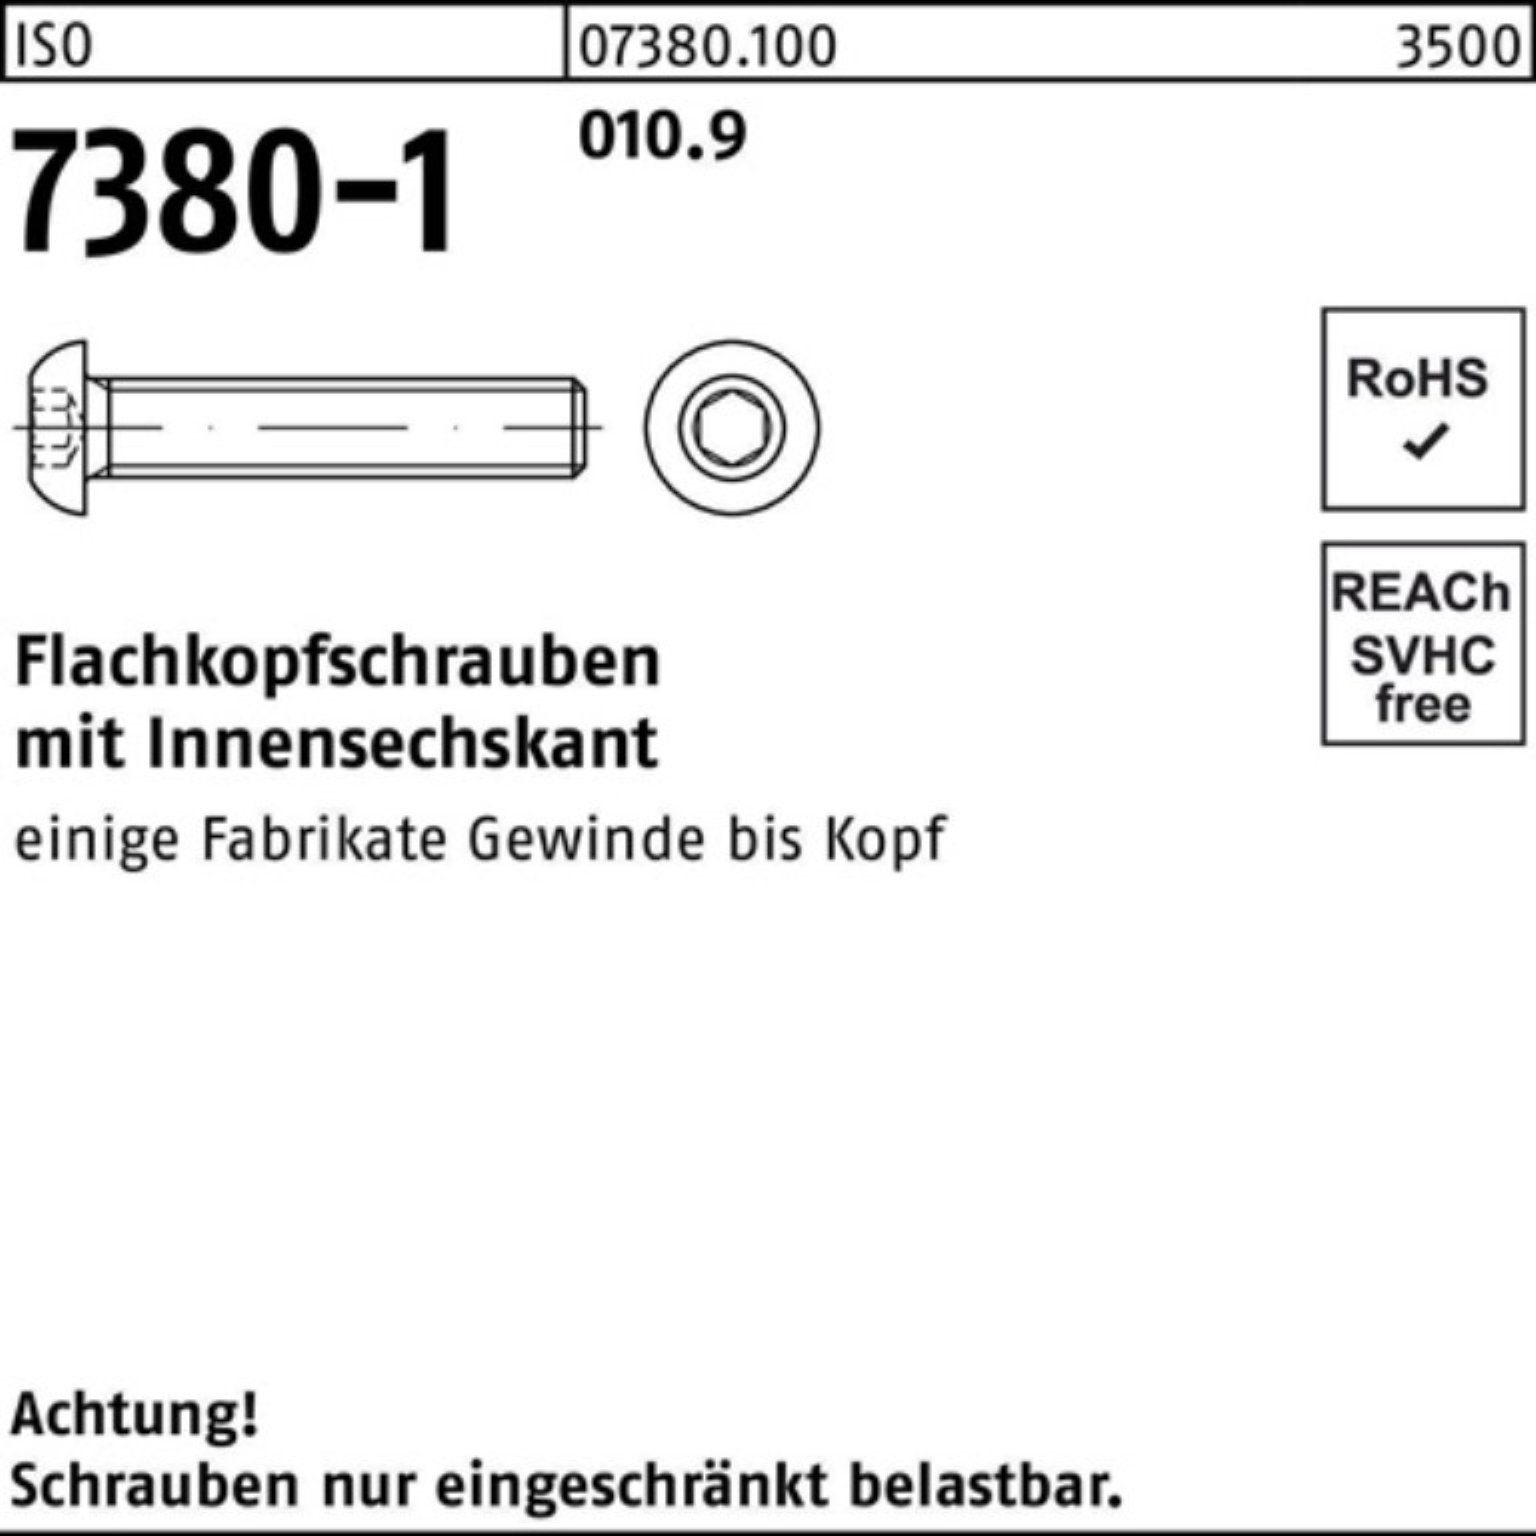 Reyher Innen-6kt Schraube 7380-1 Pack 500 M4x 010.9 ISO Stü 6 Flachkopfschraube 500er